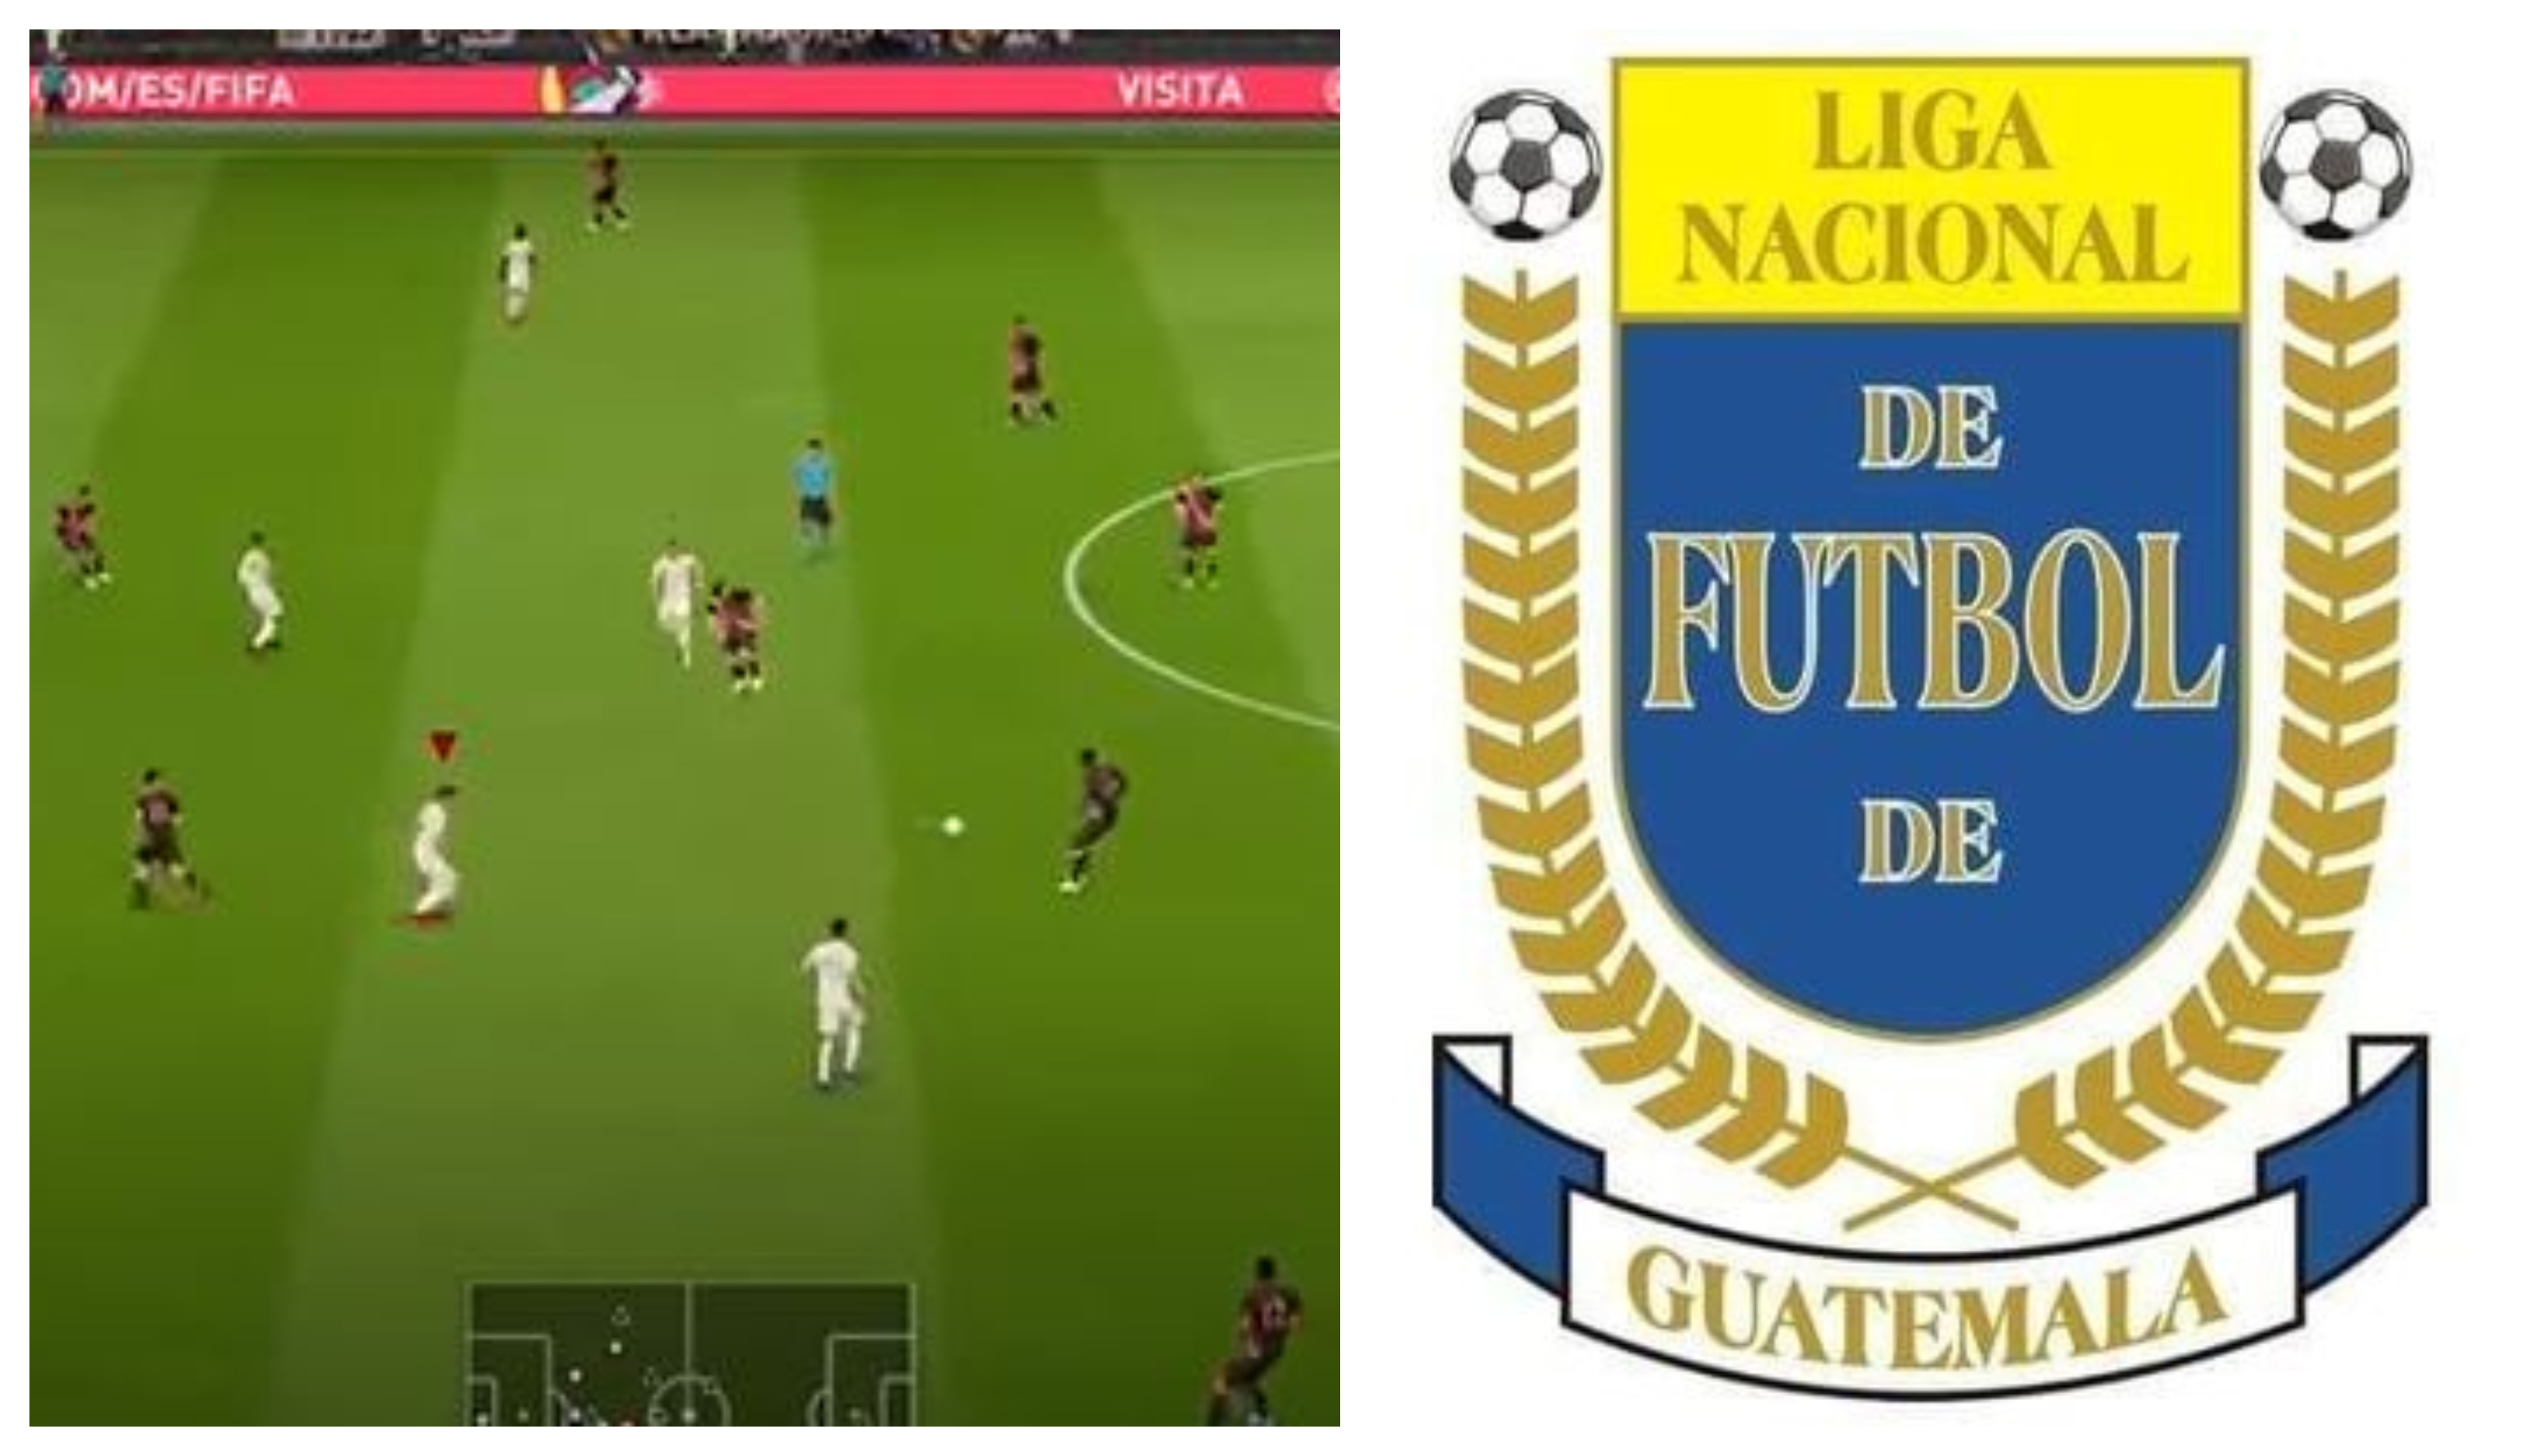 La Liga Nacional de Futbol de Guatemala podría aparecer en Fifa 21. (Foto Prensa Libre: Youtube)